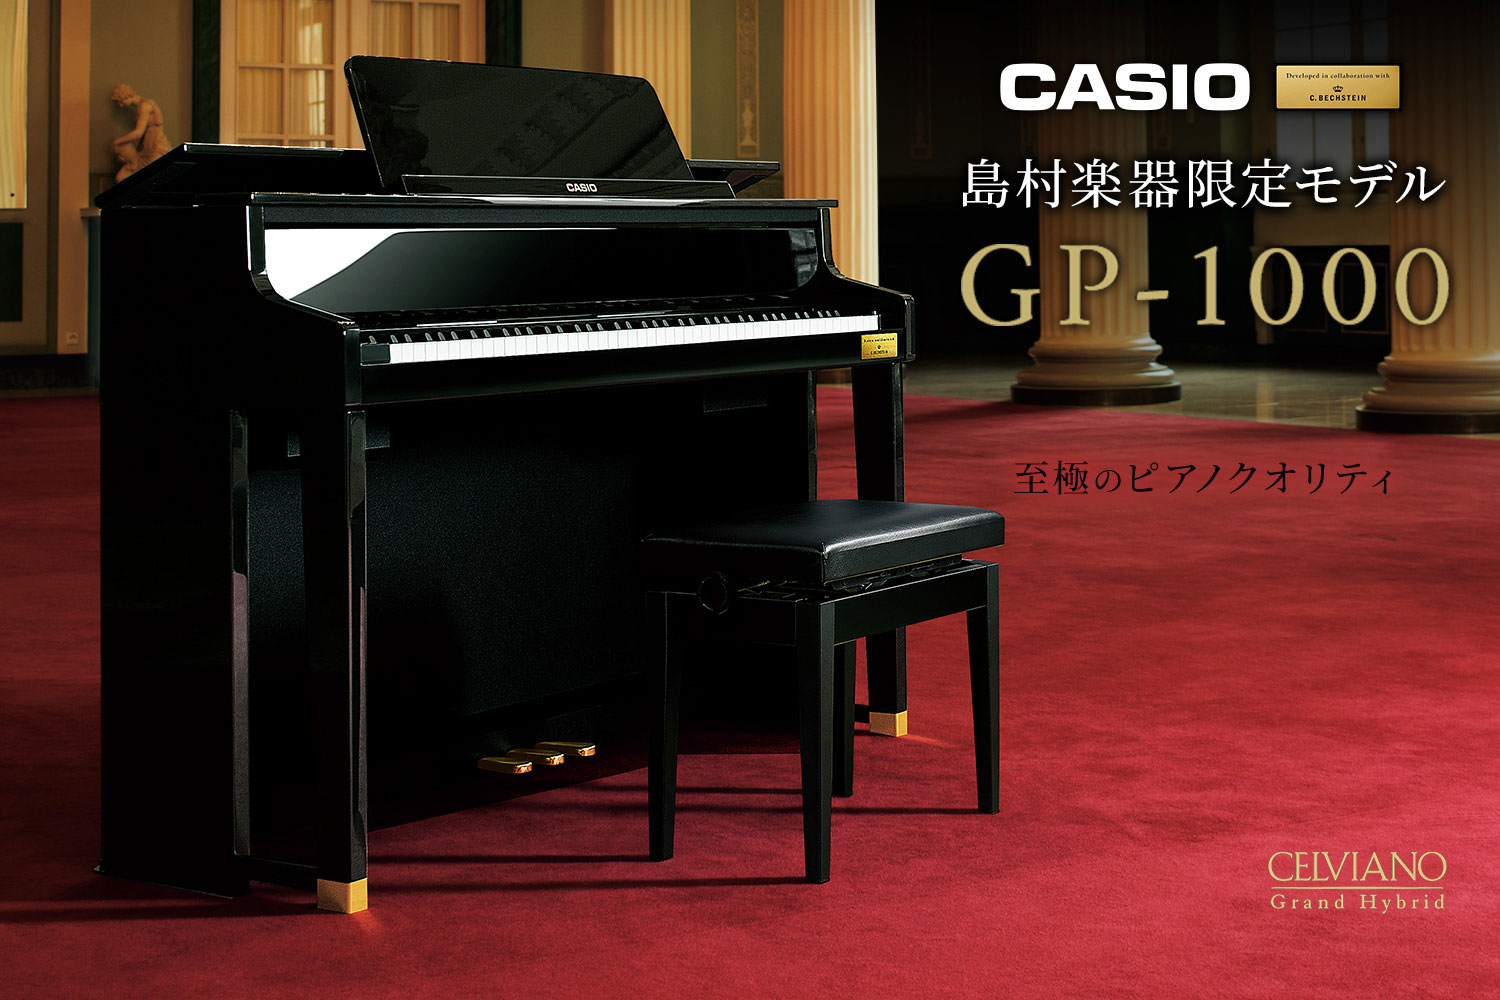 世界3台ピアノの音色が搭載されており、ベヒシュタインの鍵盤を採用しているハイブリットピアノです。GP-1000